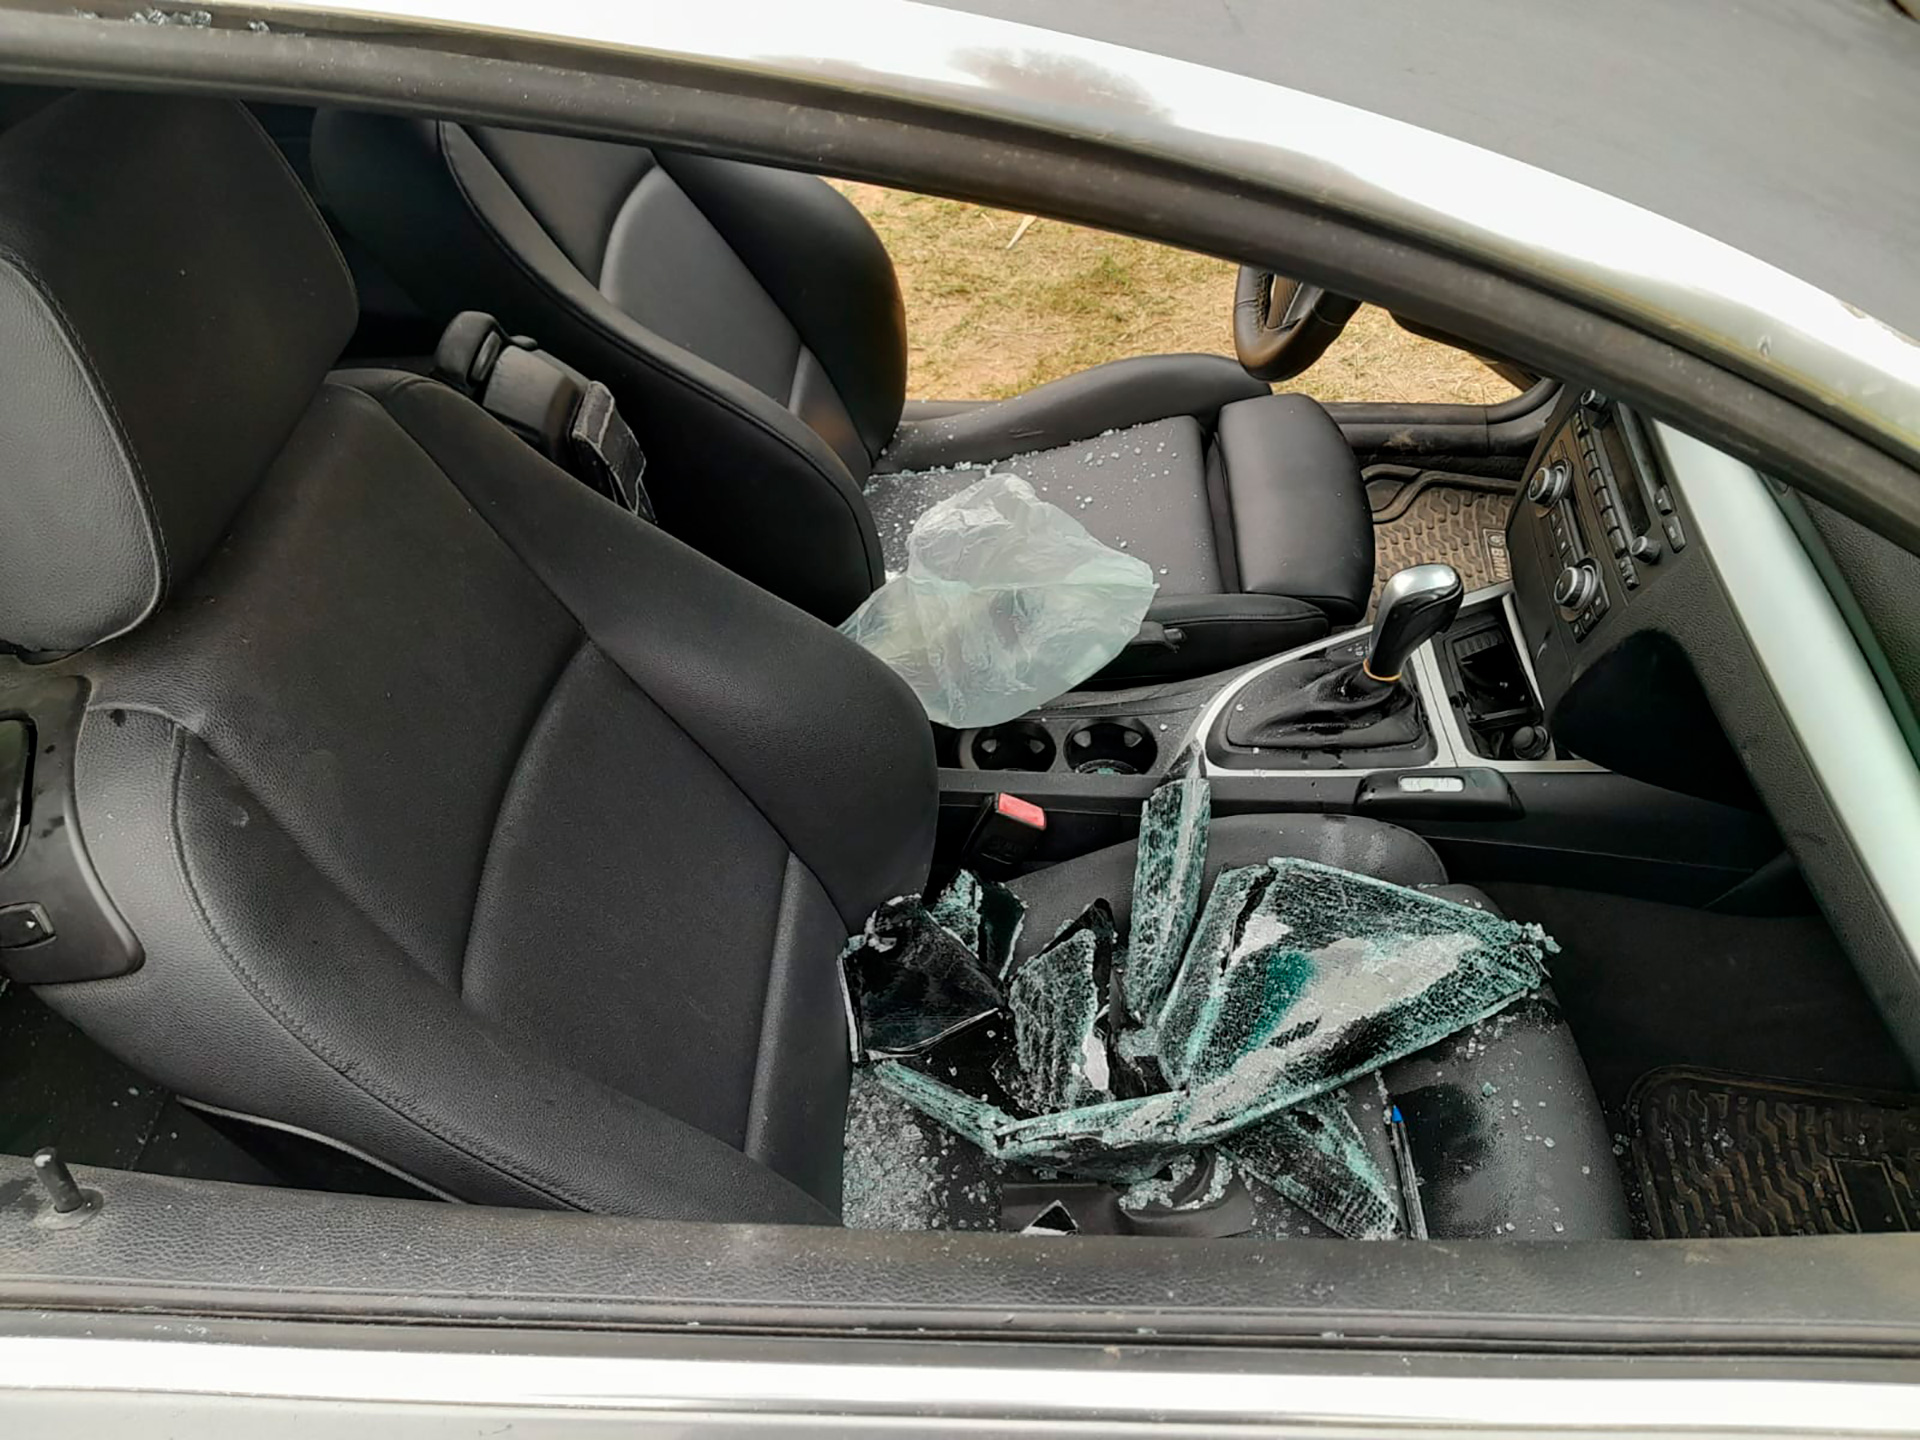 El interior del automóvil hallado por la policía en Santa Fe